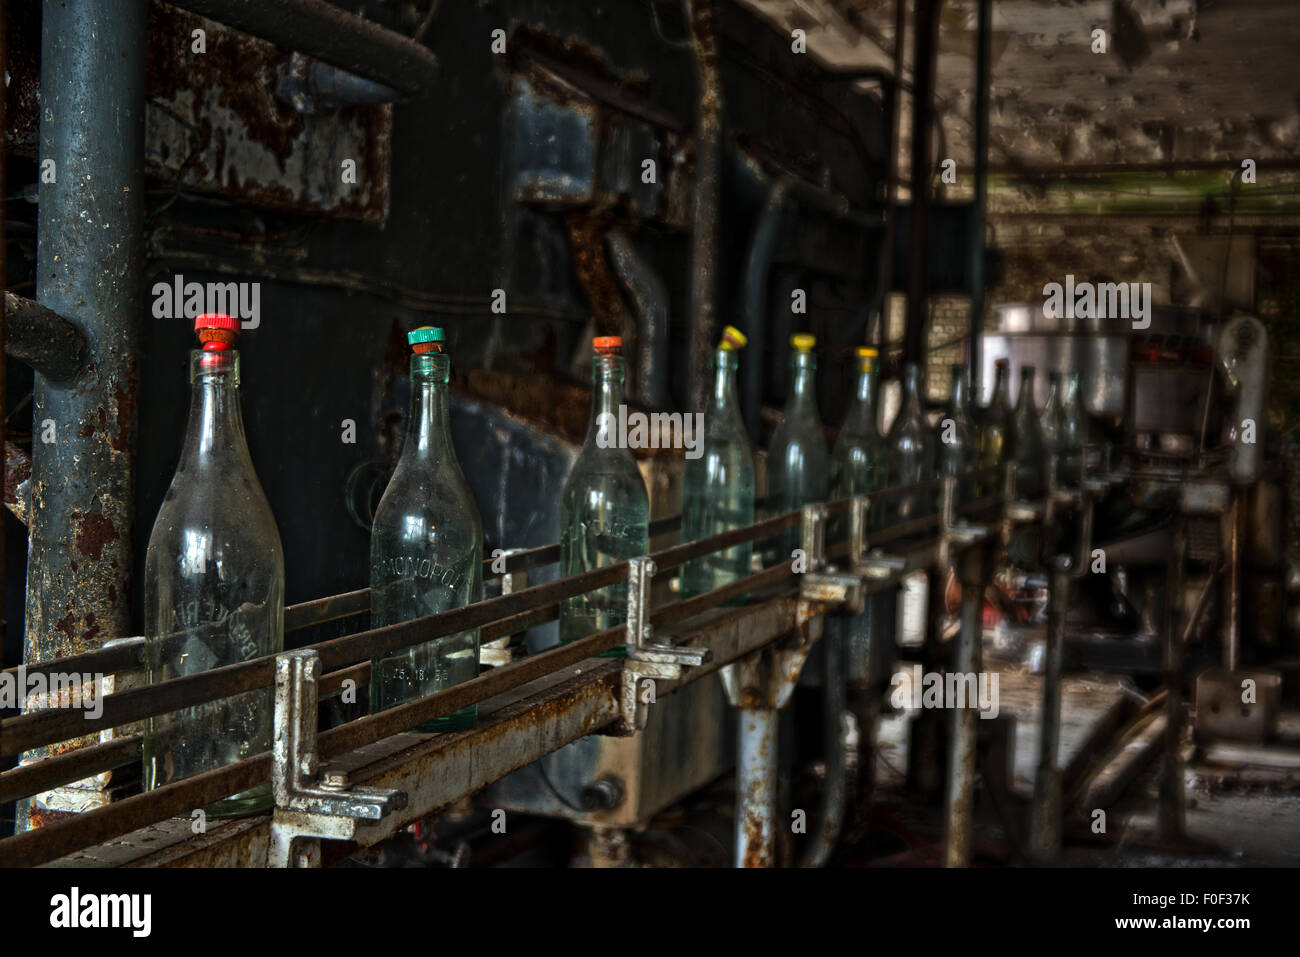 Bottiglie siedono ancora in attesa di essere utilizzati nell'ora chiusa e abbandonata White Star Brewery, Rick Steenweg in Belgio Foto Stock